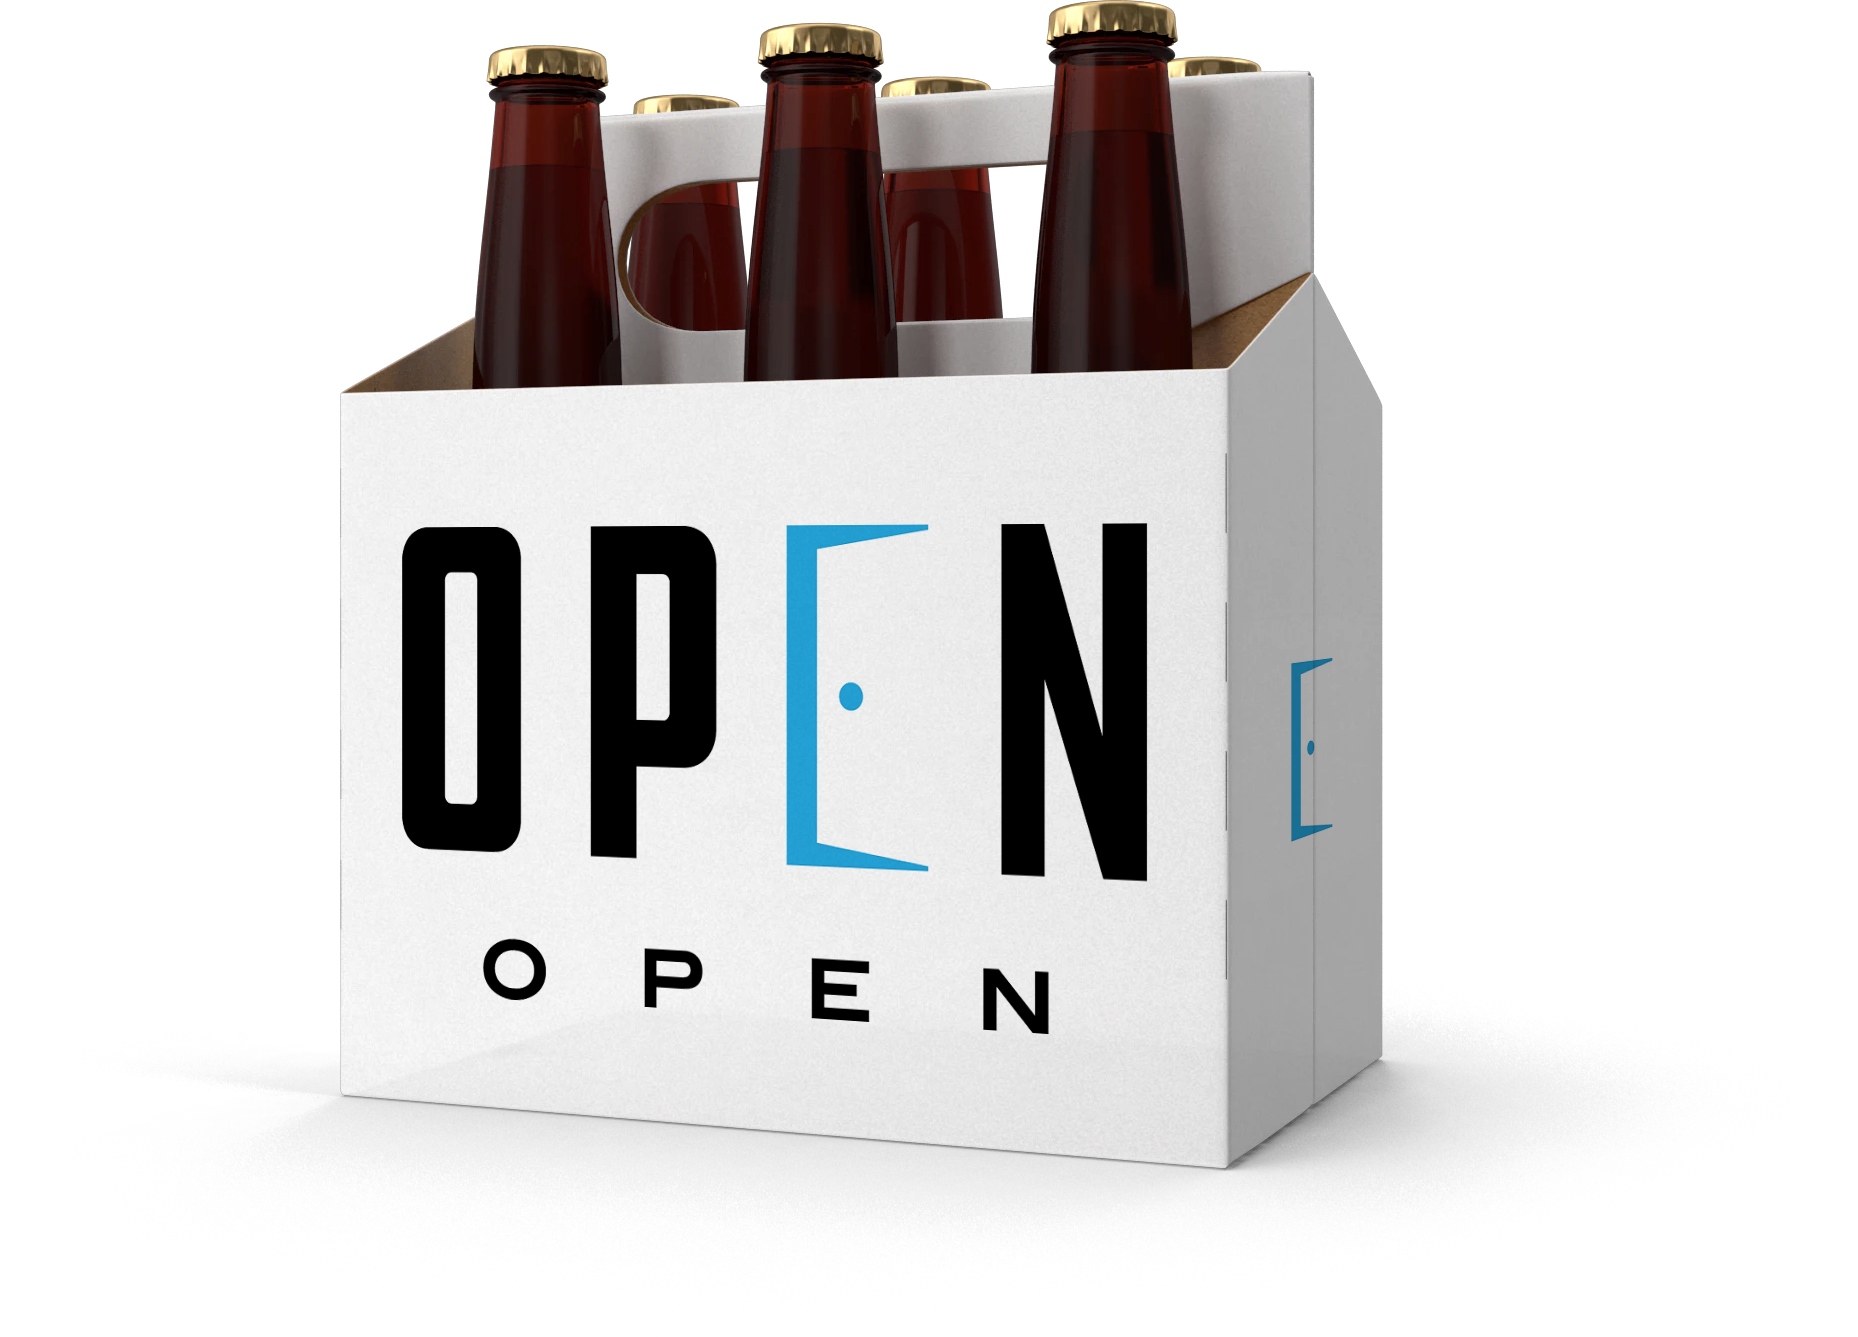 OpenOpen - Cheers!